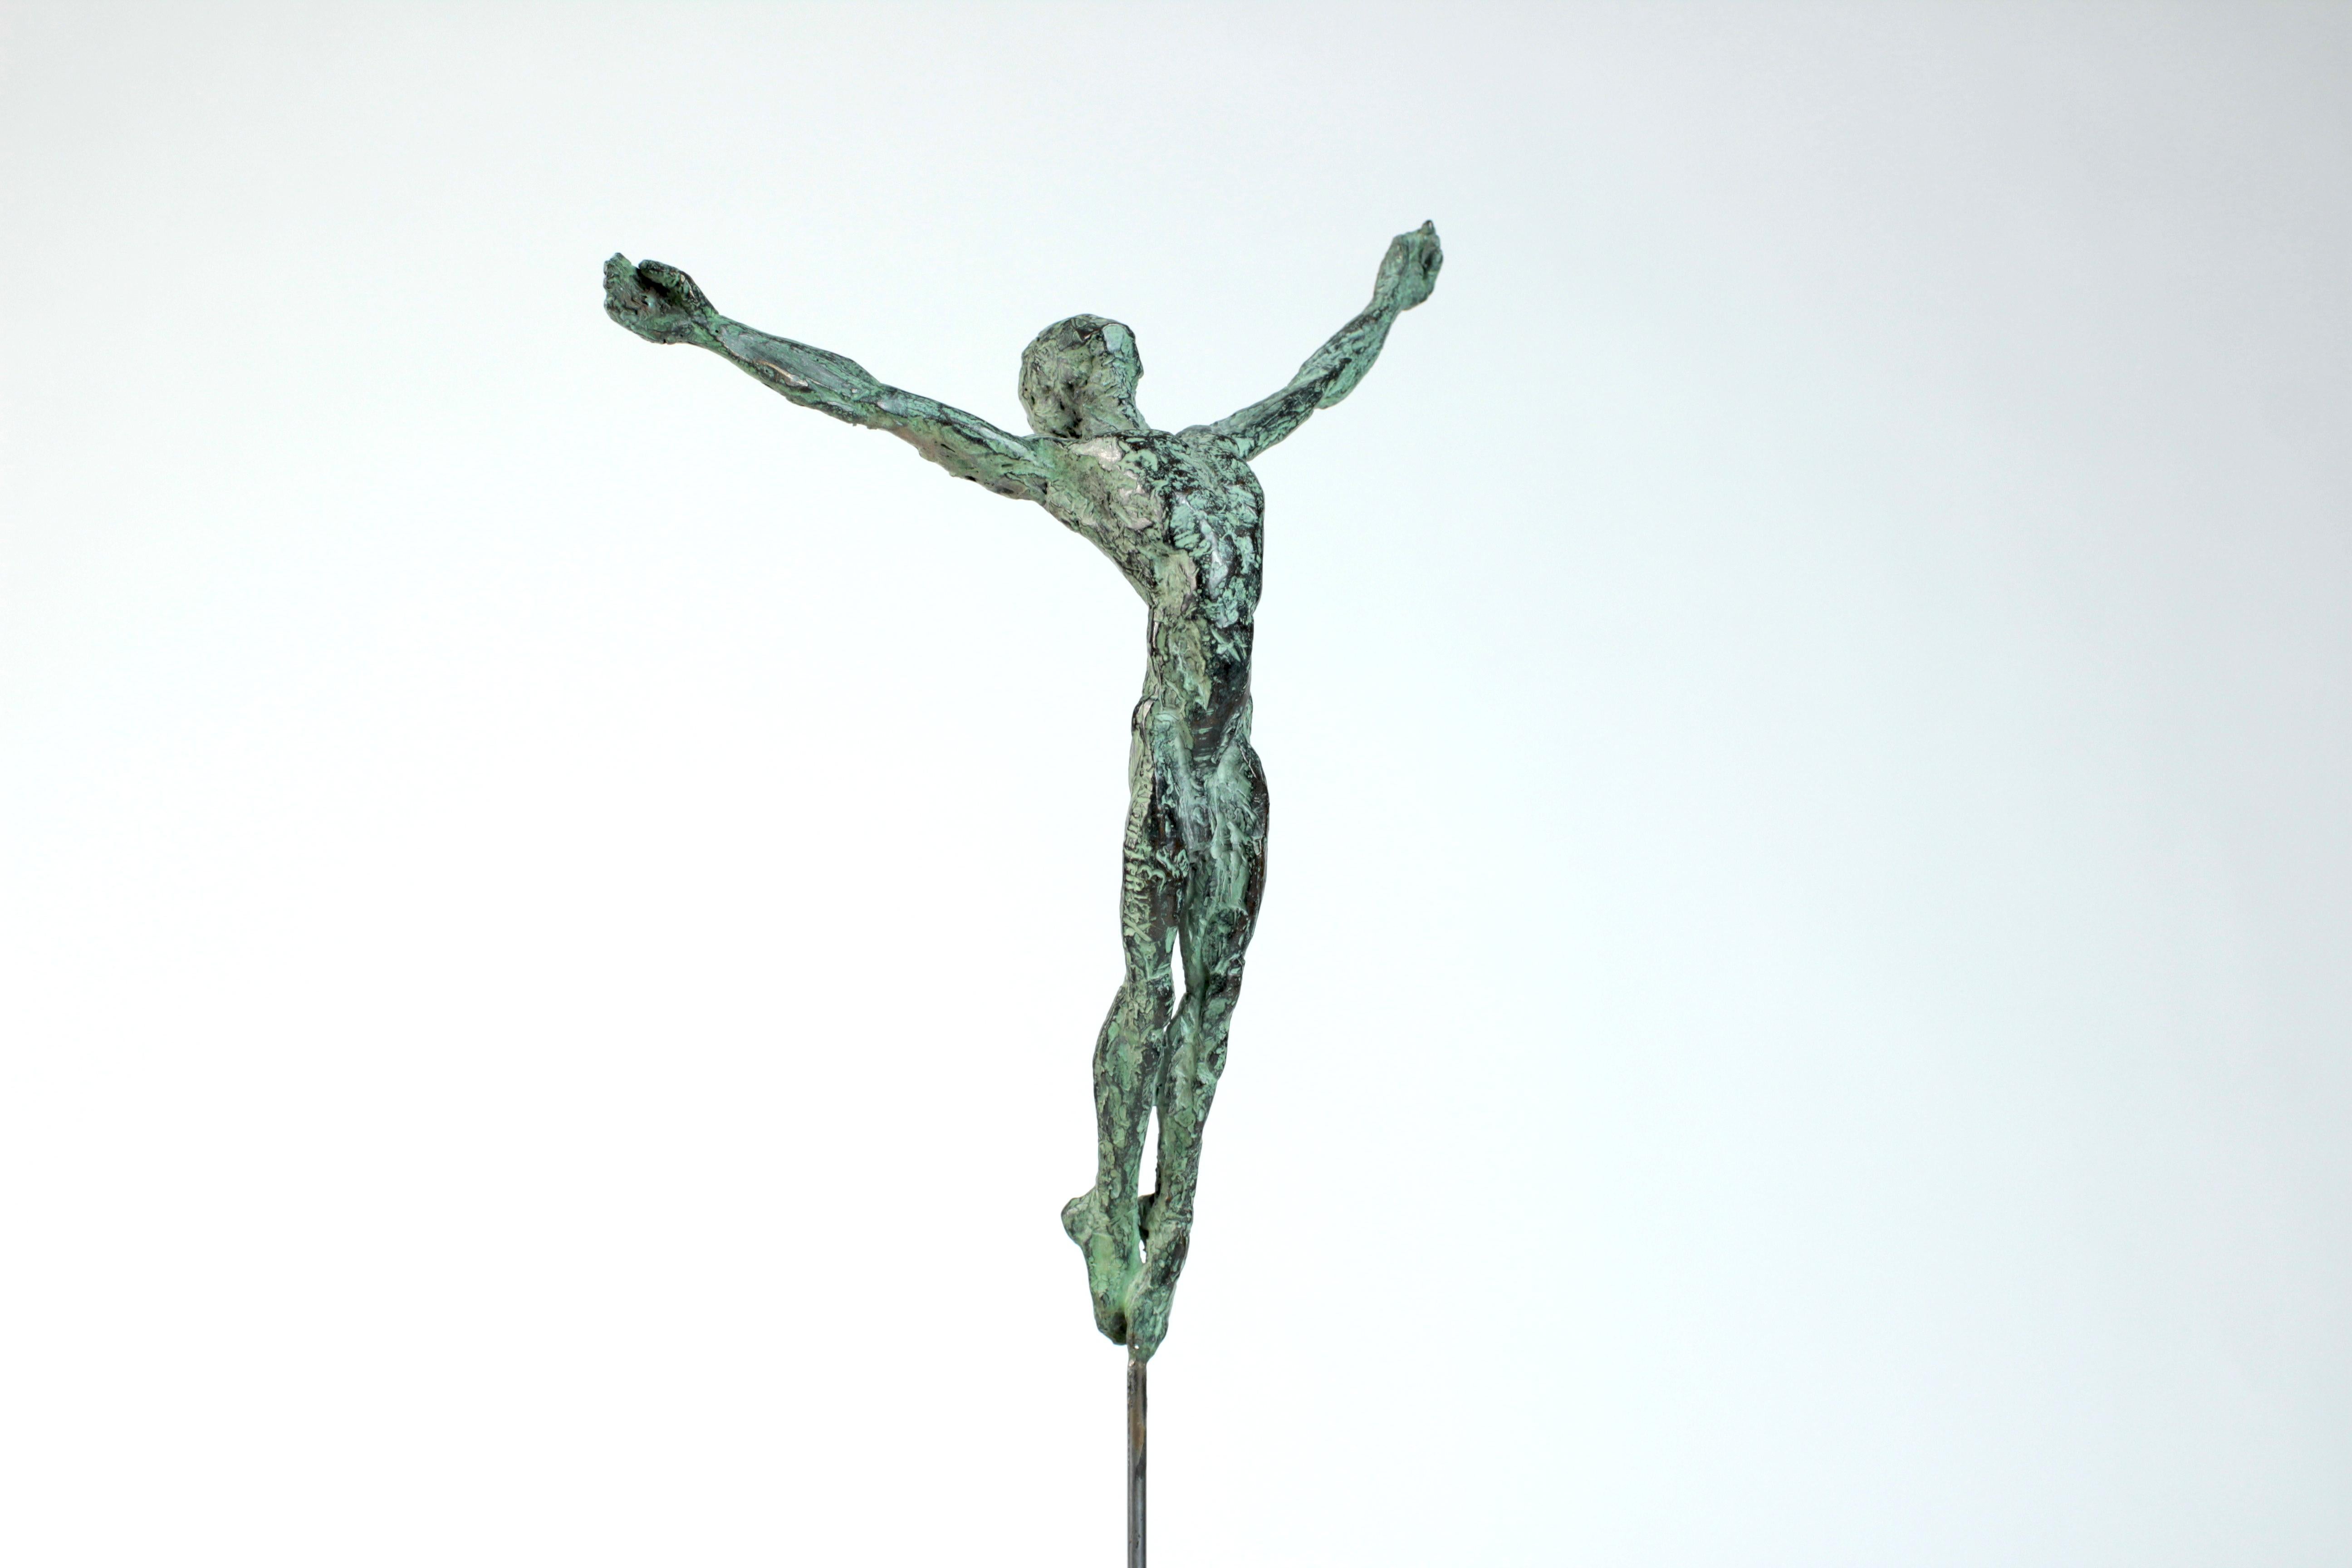 Dancer "Takeoff" II est une sculpture en bronze de l'artiste contemporain Yann Guillon, dont les dimensions sont de 25 × 15 × 8 cm (9.8 × 5.9 × 3.1 in). Hauteur de la sculpture avec la base en métal : 40 cm (15,7 in). 
La sculpture est signée et